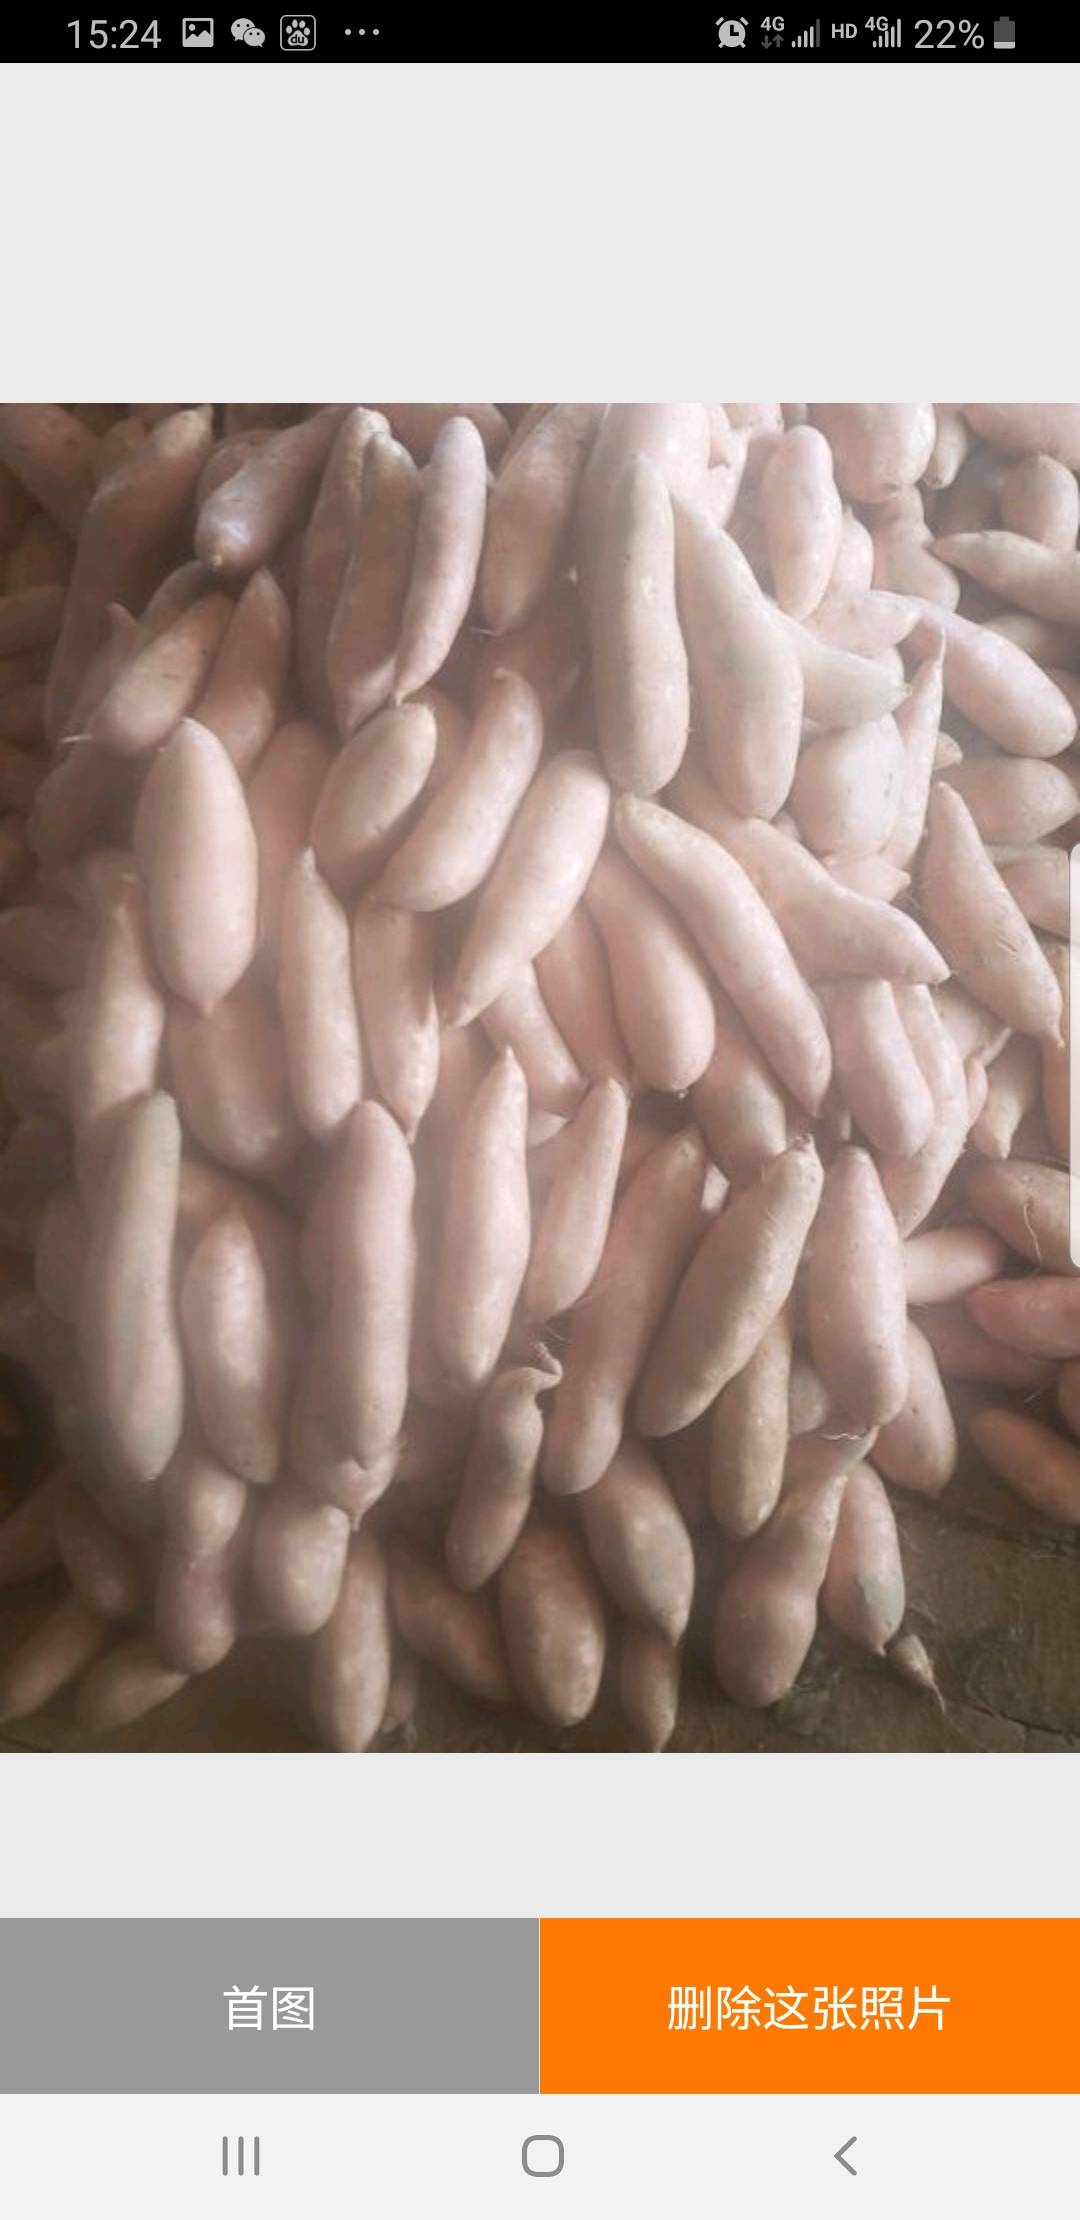 龙薯九红薯大量供应
通货
商品薯
次薯